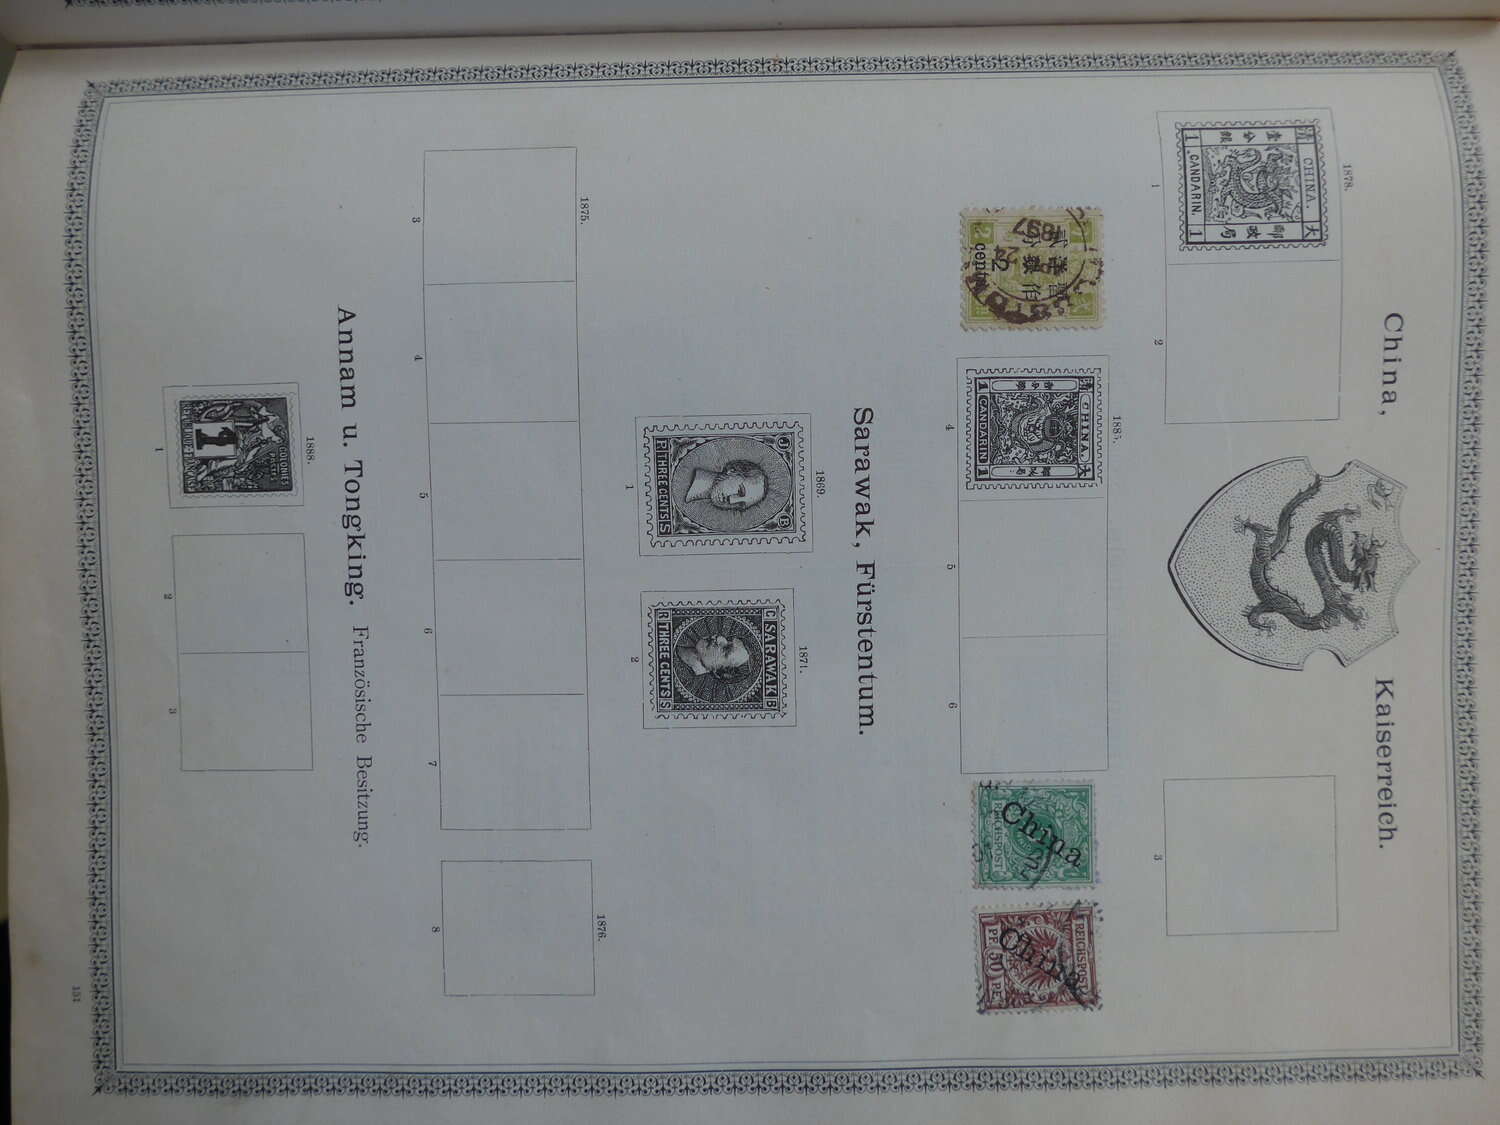 Lot 26 - sammlungen und posten händlernachlässe -  Deutsche Briefmarken AG 6th Large Lot Auction Deutsche Briefmarken AG